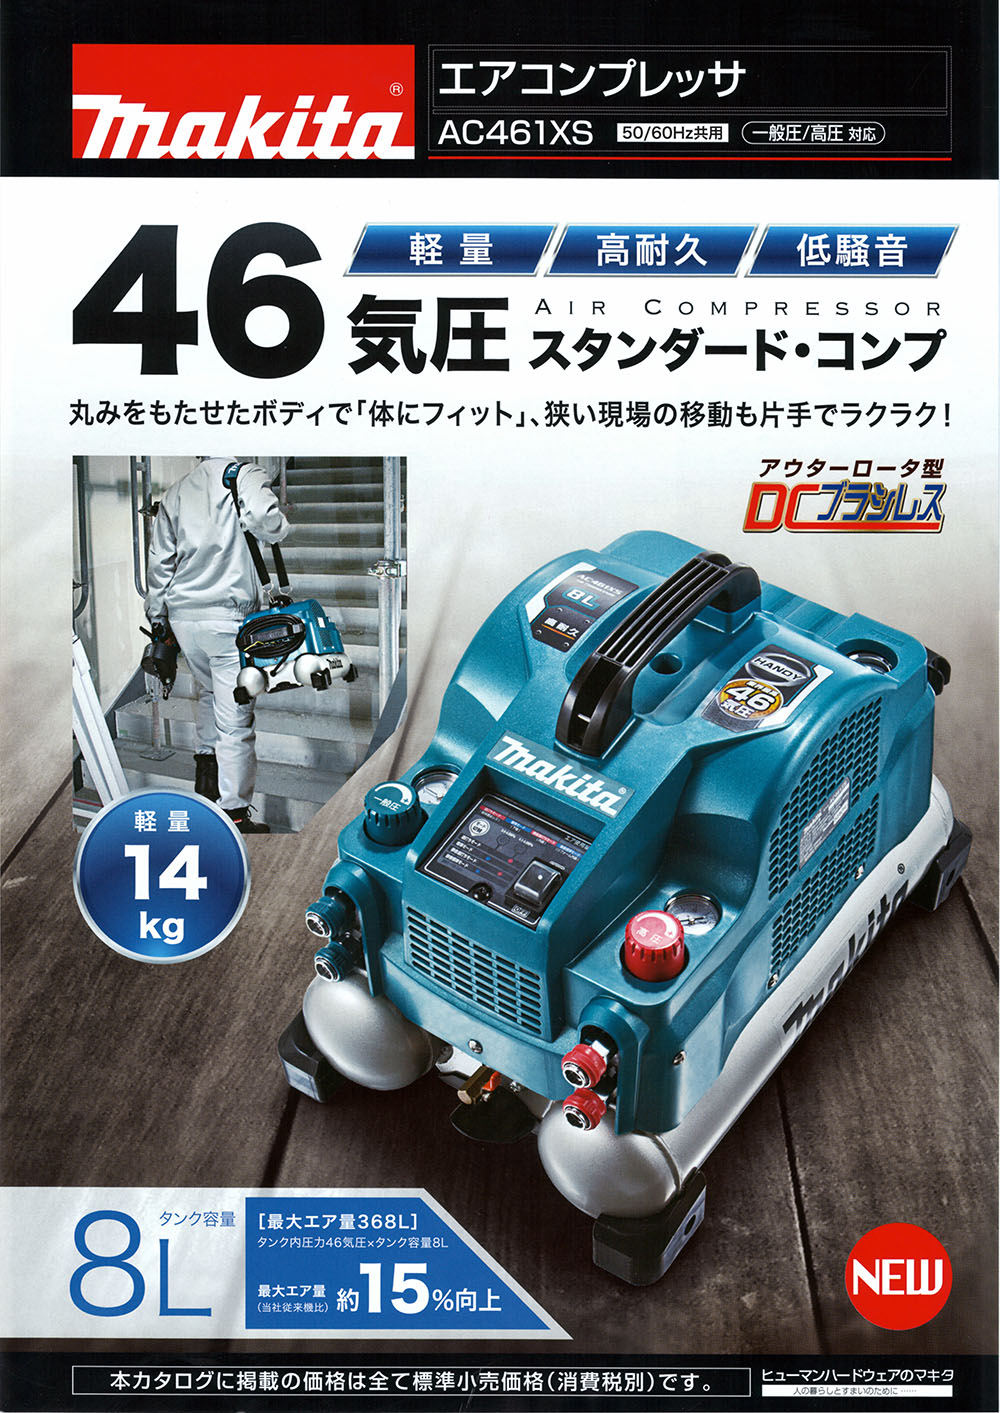 マキタ エアコンプレッサ AC461XS 丸甲金物株式会社